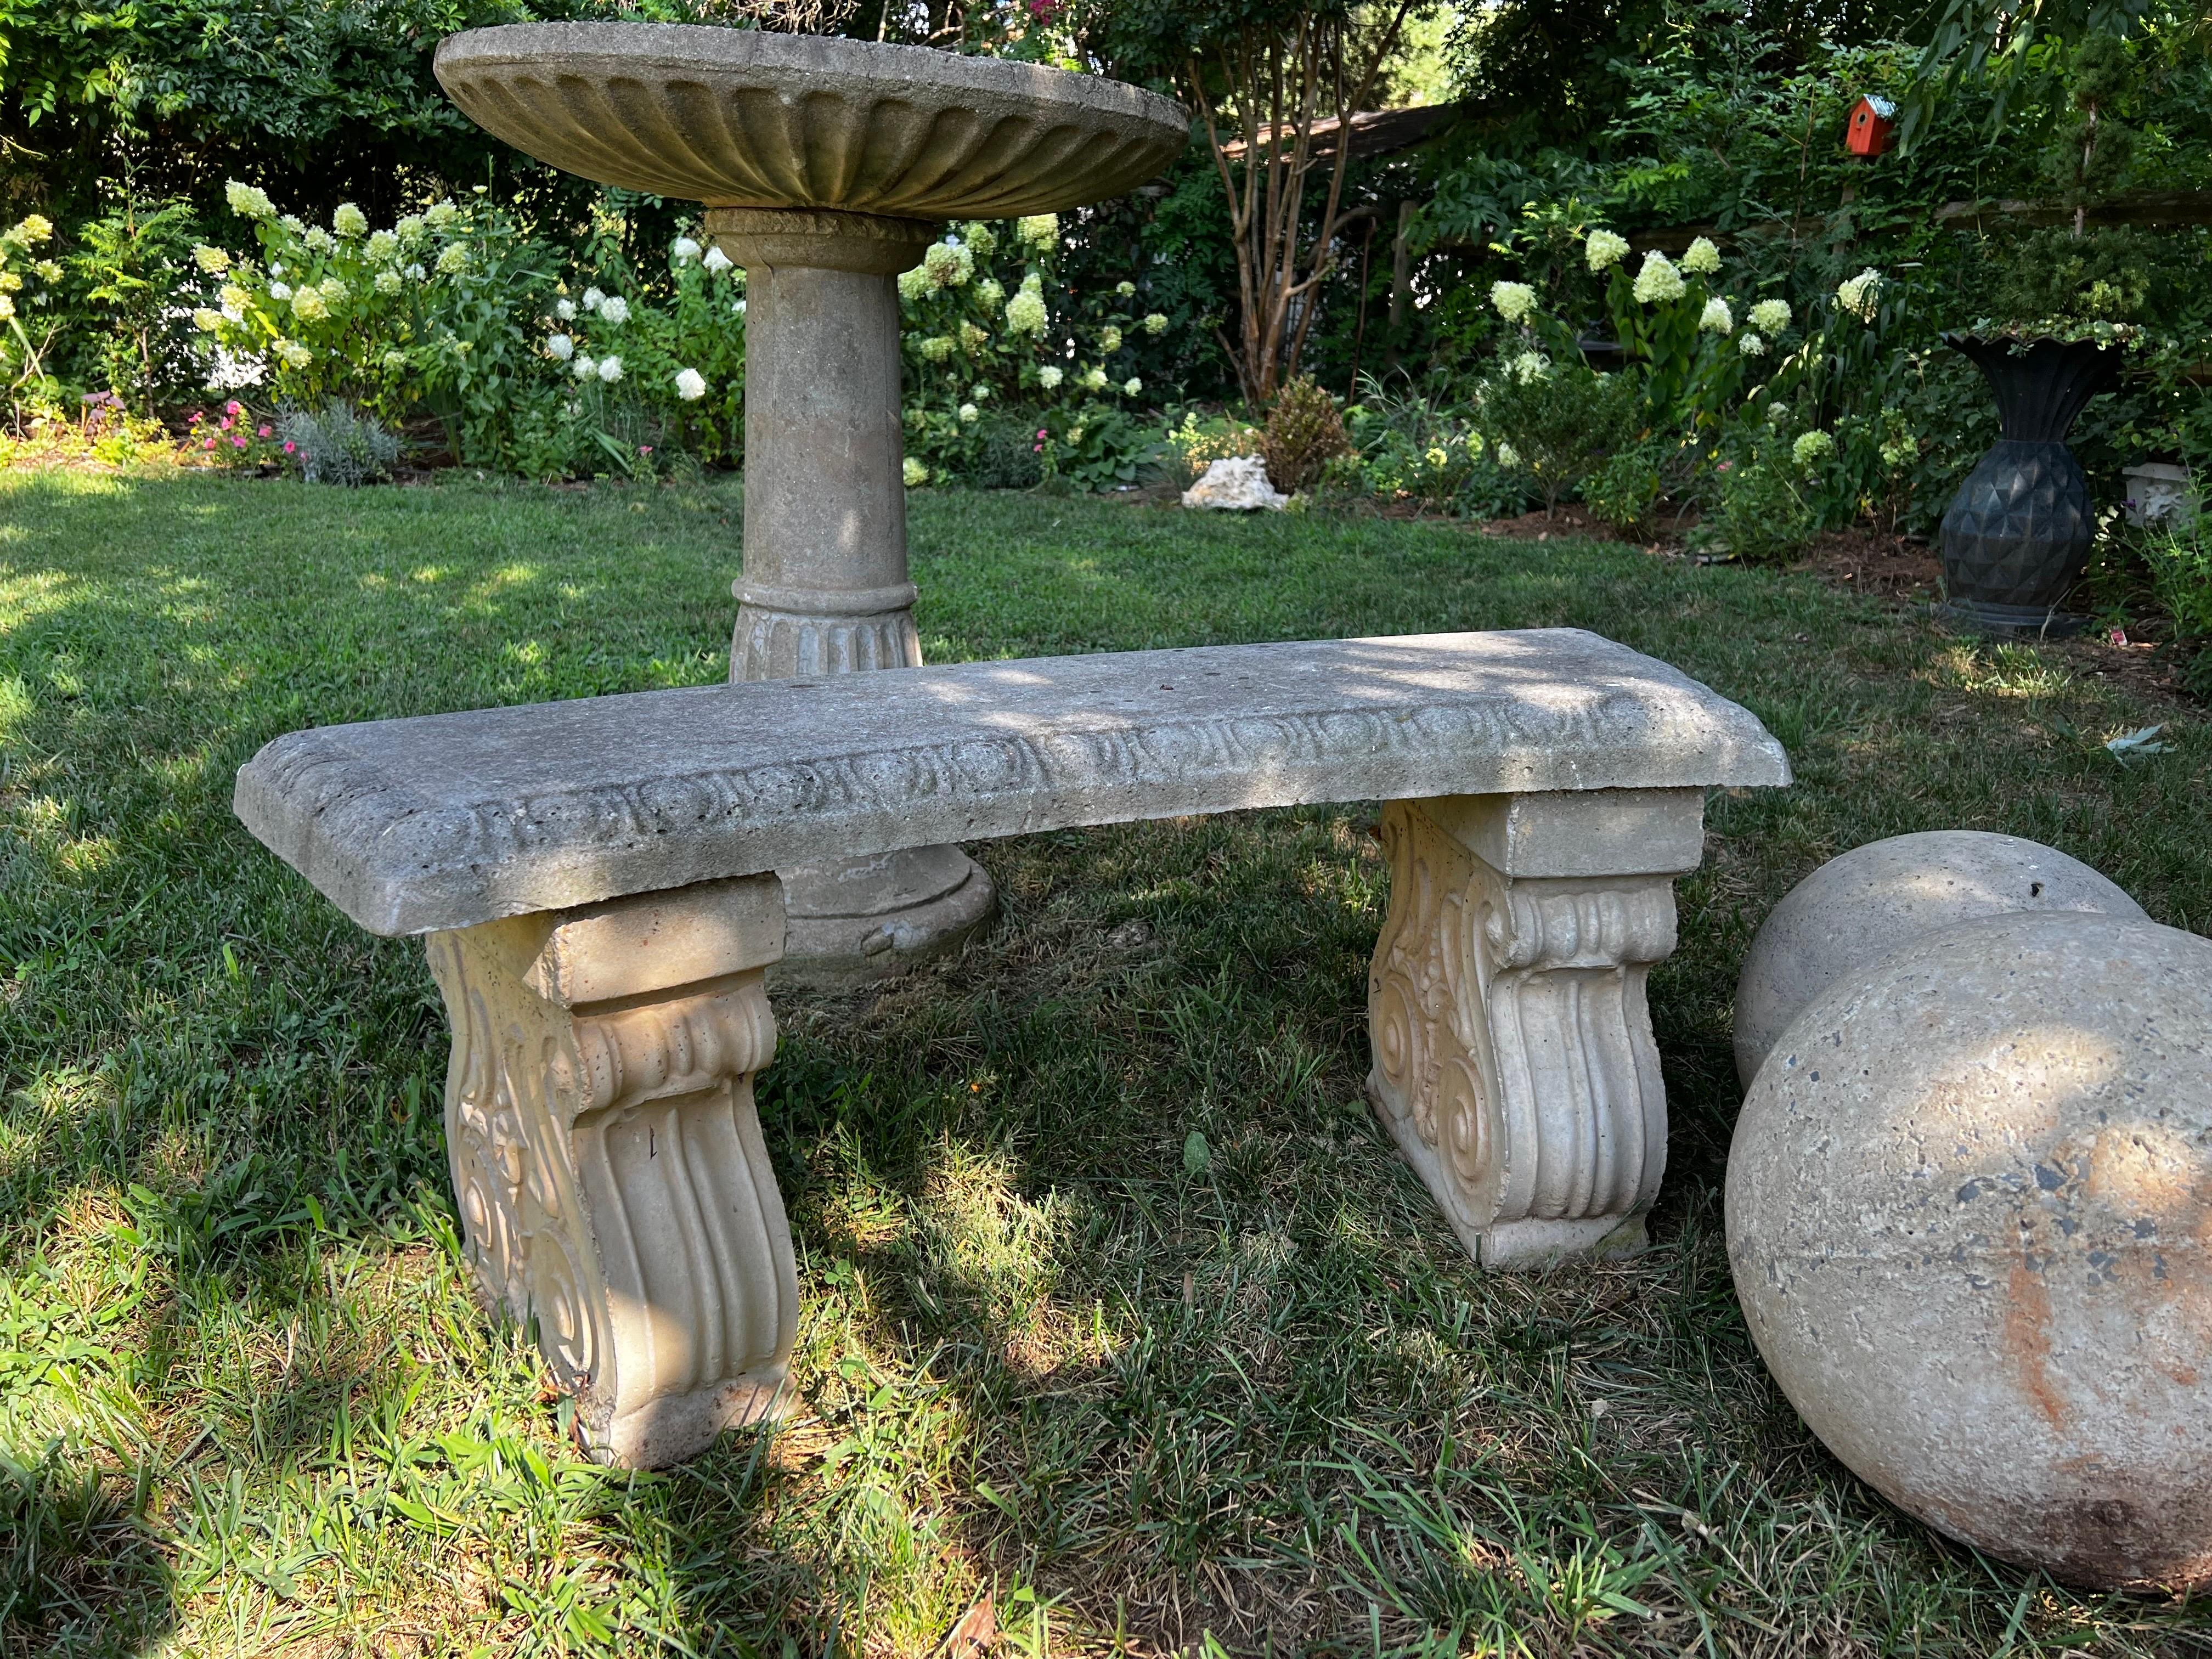 Banc de jardin en pierre moulée. L'assise légèrement incurvée repose sur deux piédestaux sculptés.
Magnifique patine vieillie ajoutant de l'élégance à tout espace de jardin ou à toute entrée. 

Voir les photos pour plus de détails. Mesures dans